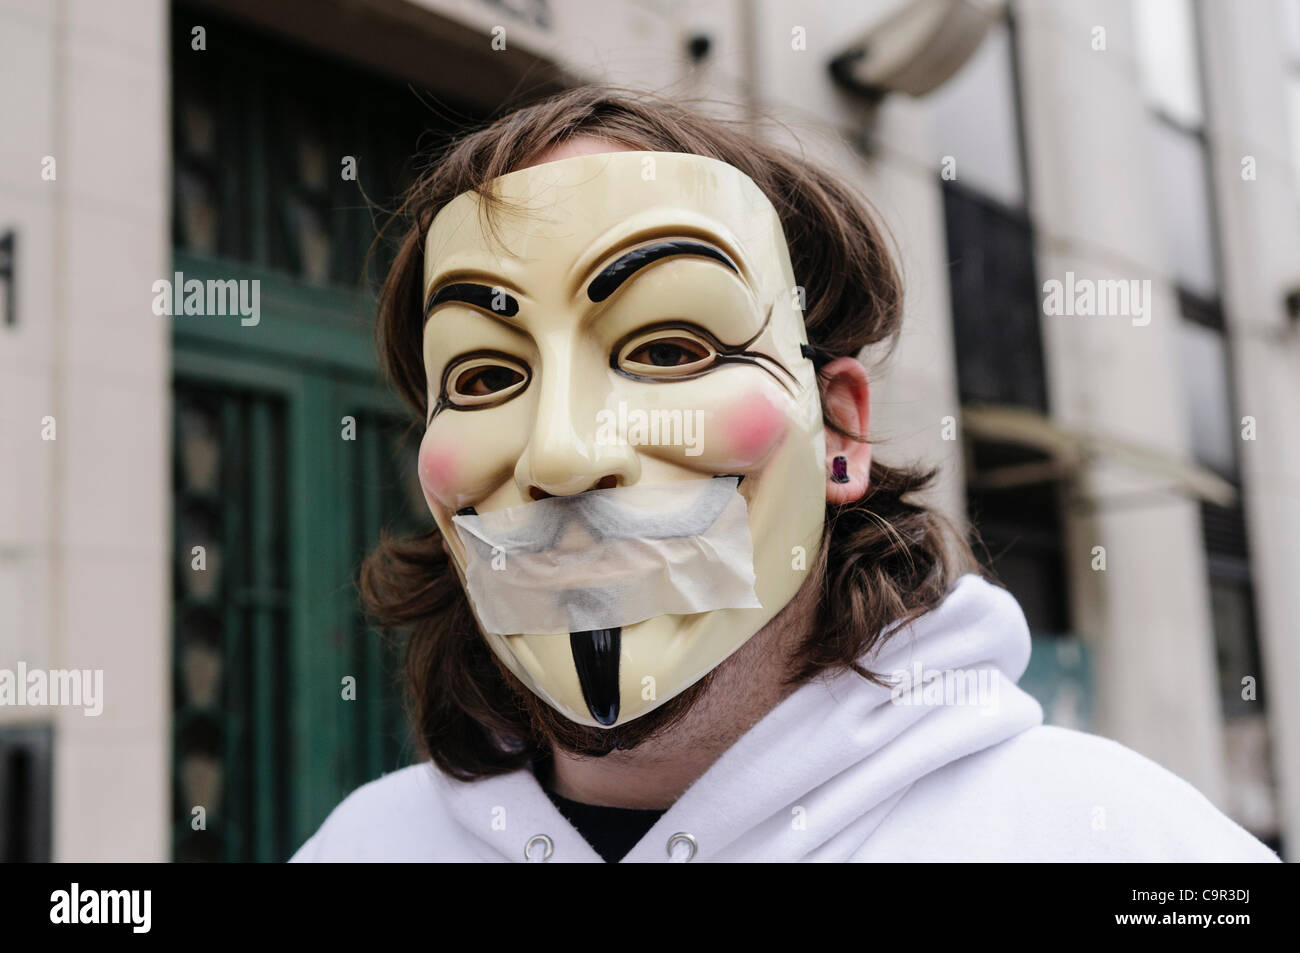 Membro del gruppo di hacker 'anonimo' indossando un 'V per Vendetta" maschera e il nastro sopra la bocca a significare la censura e limitazione della libertà di parola Foto Stock